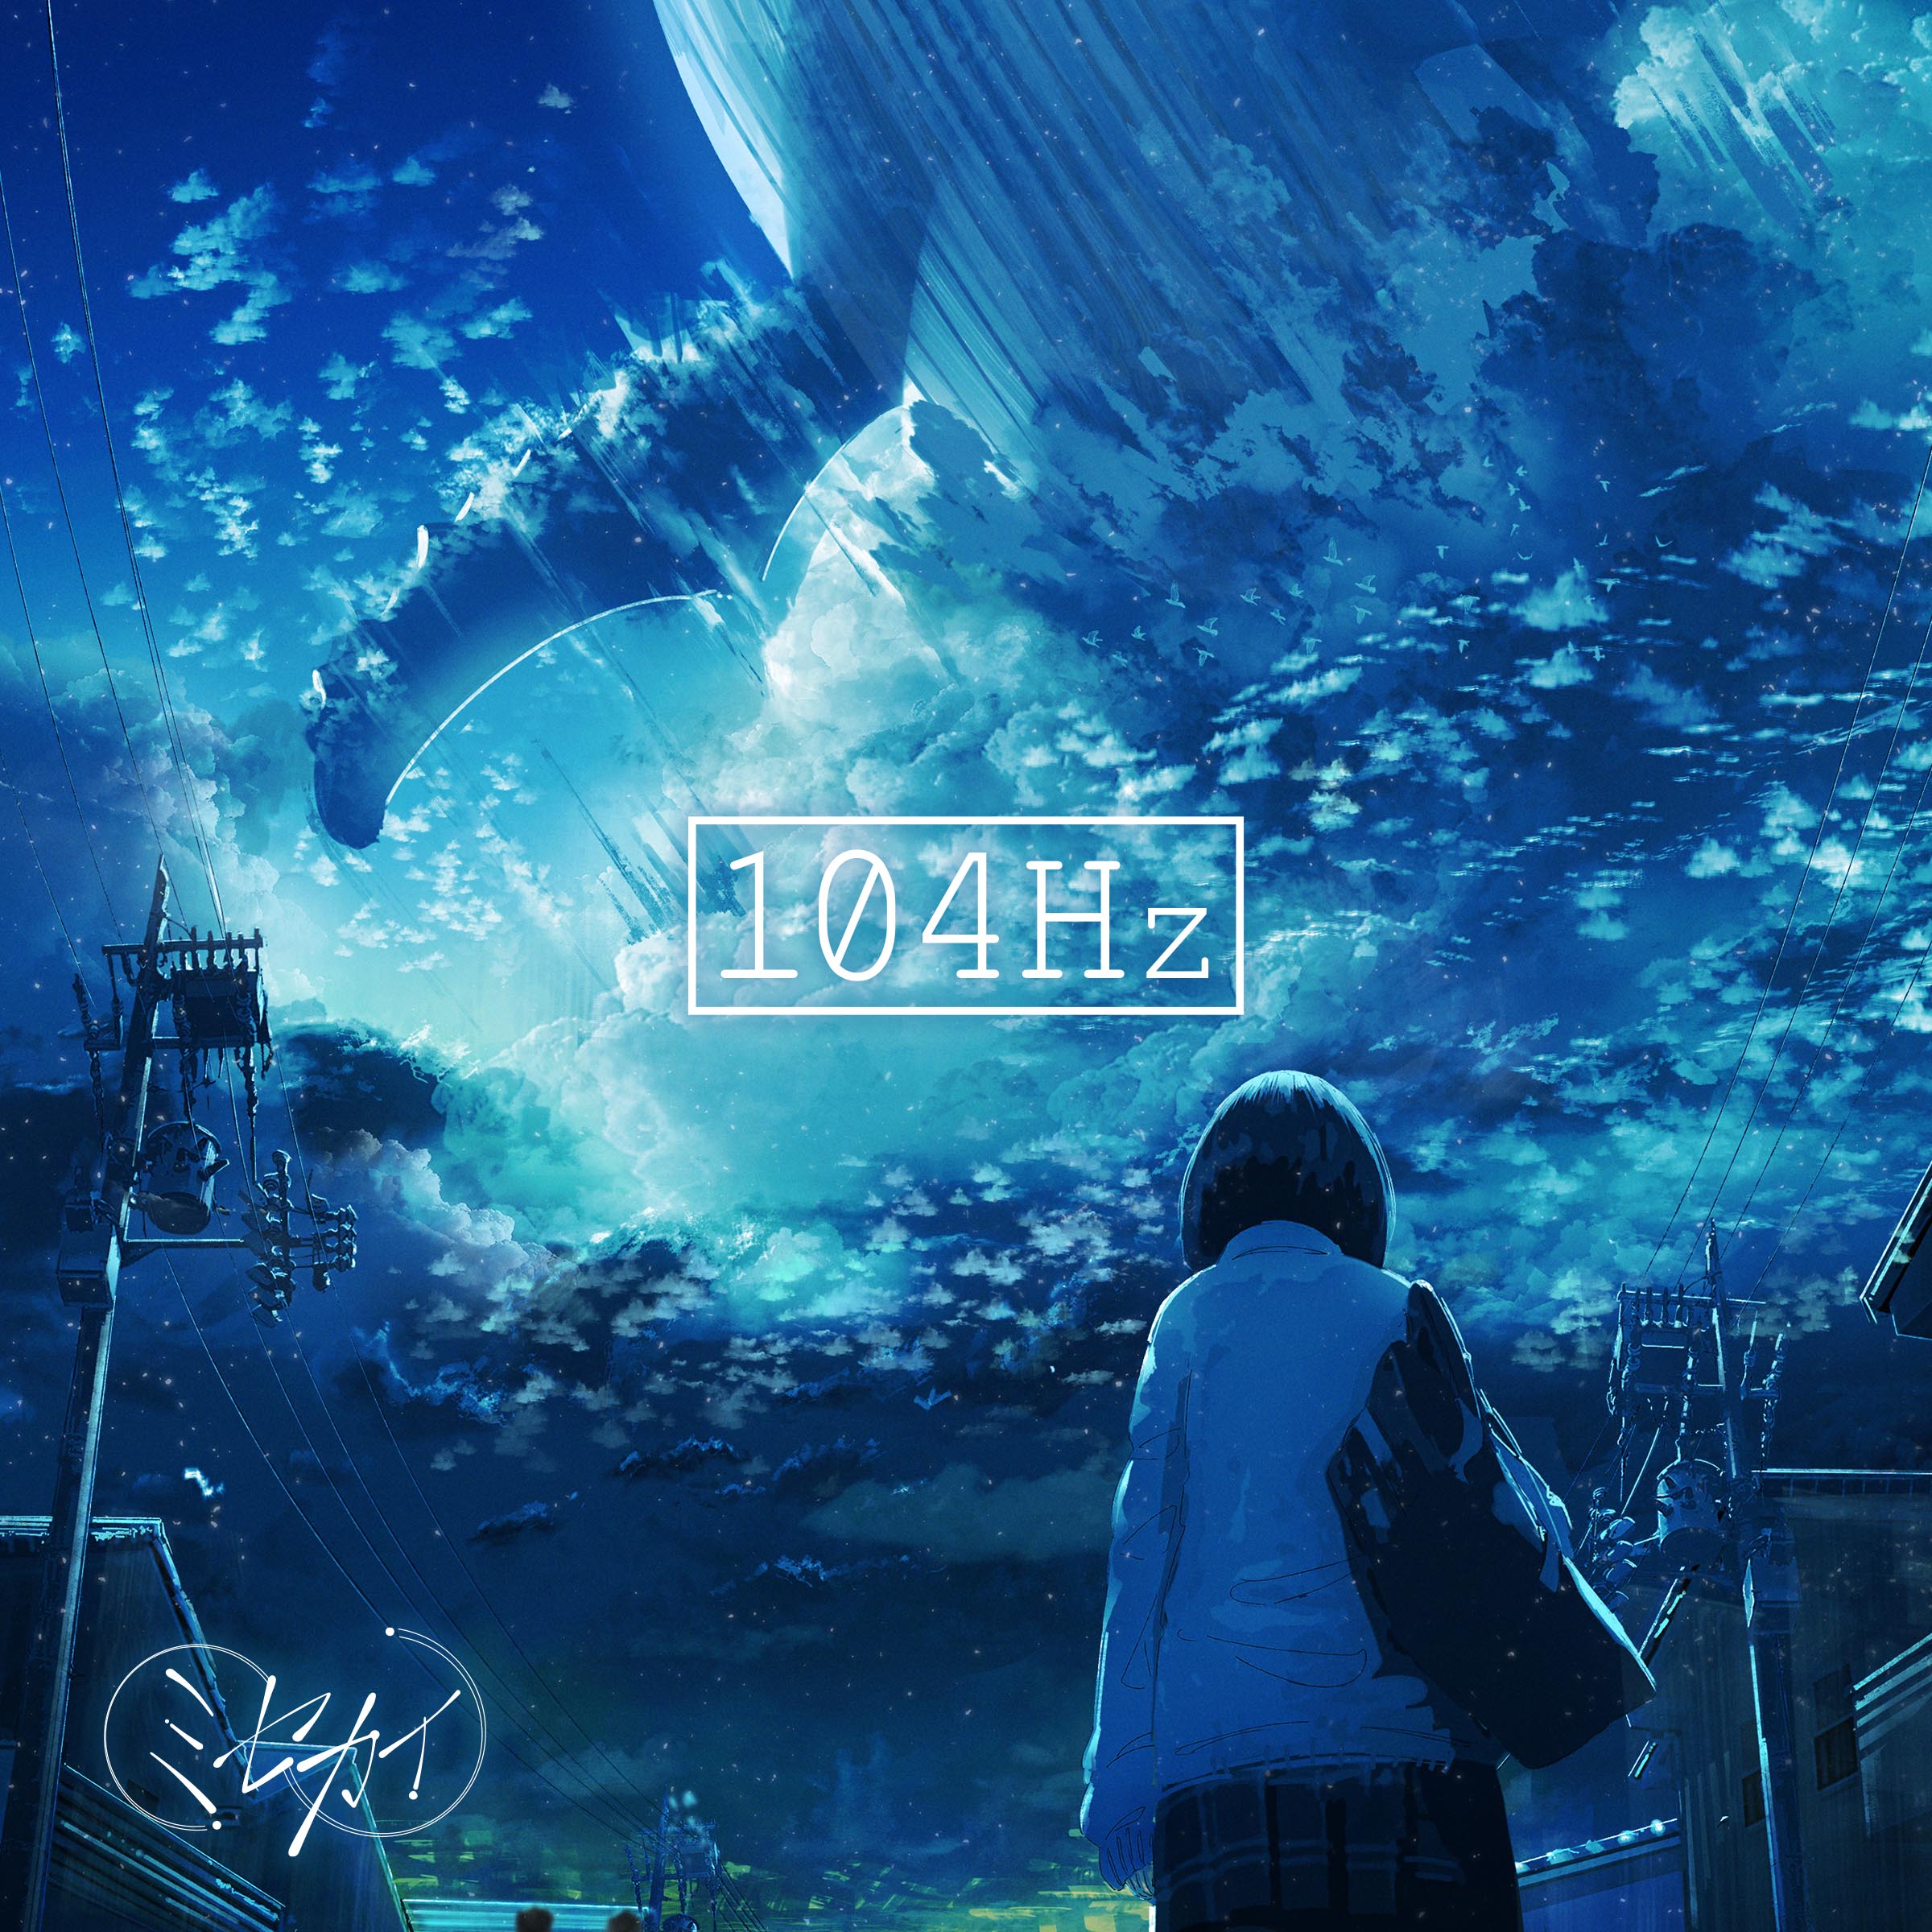 Misekai — 104Hz cover artwork